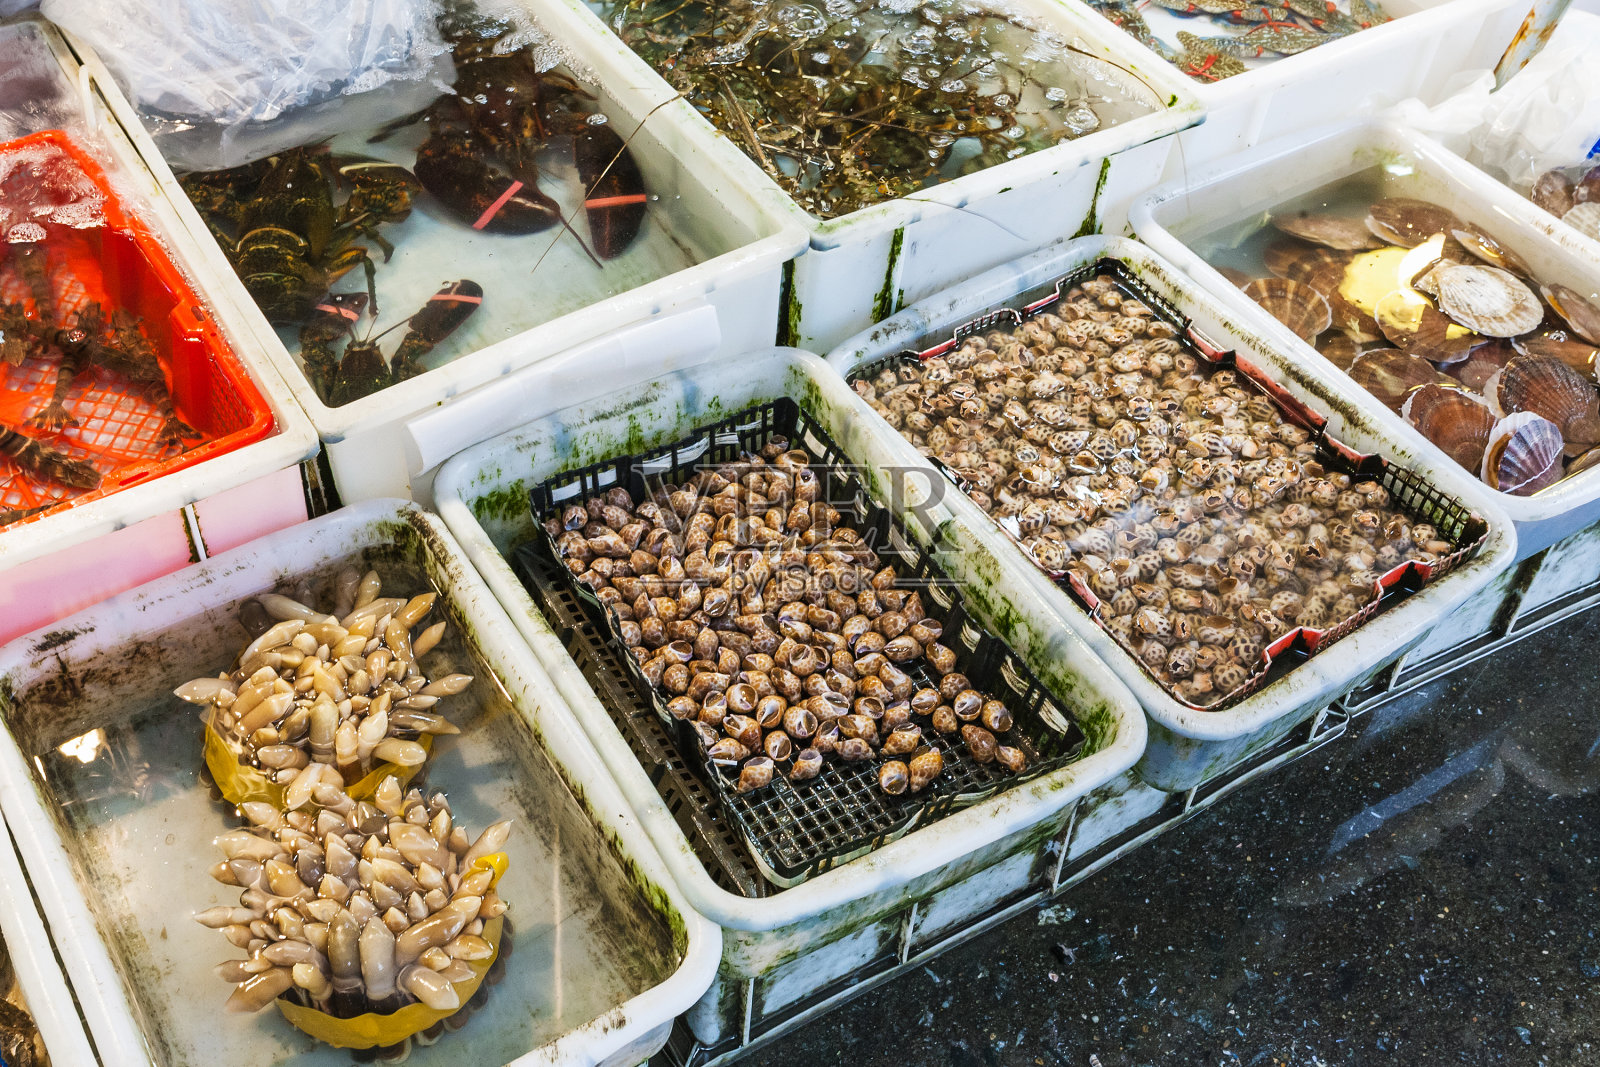 广州鱼市上的龙虾和龙虾照片摄影图片